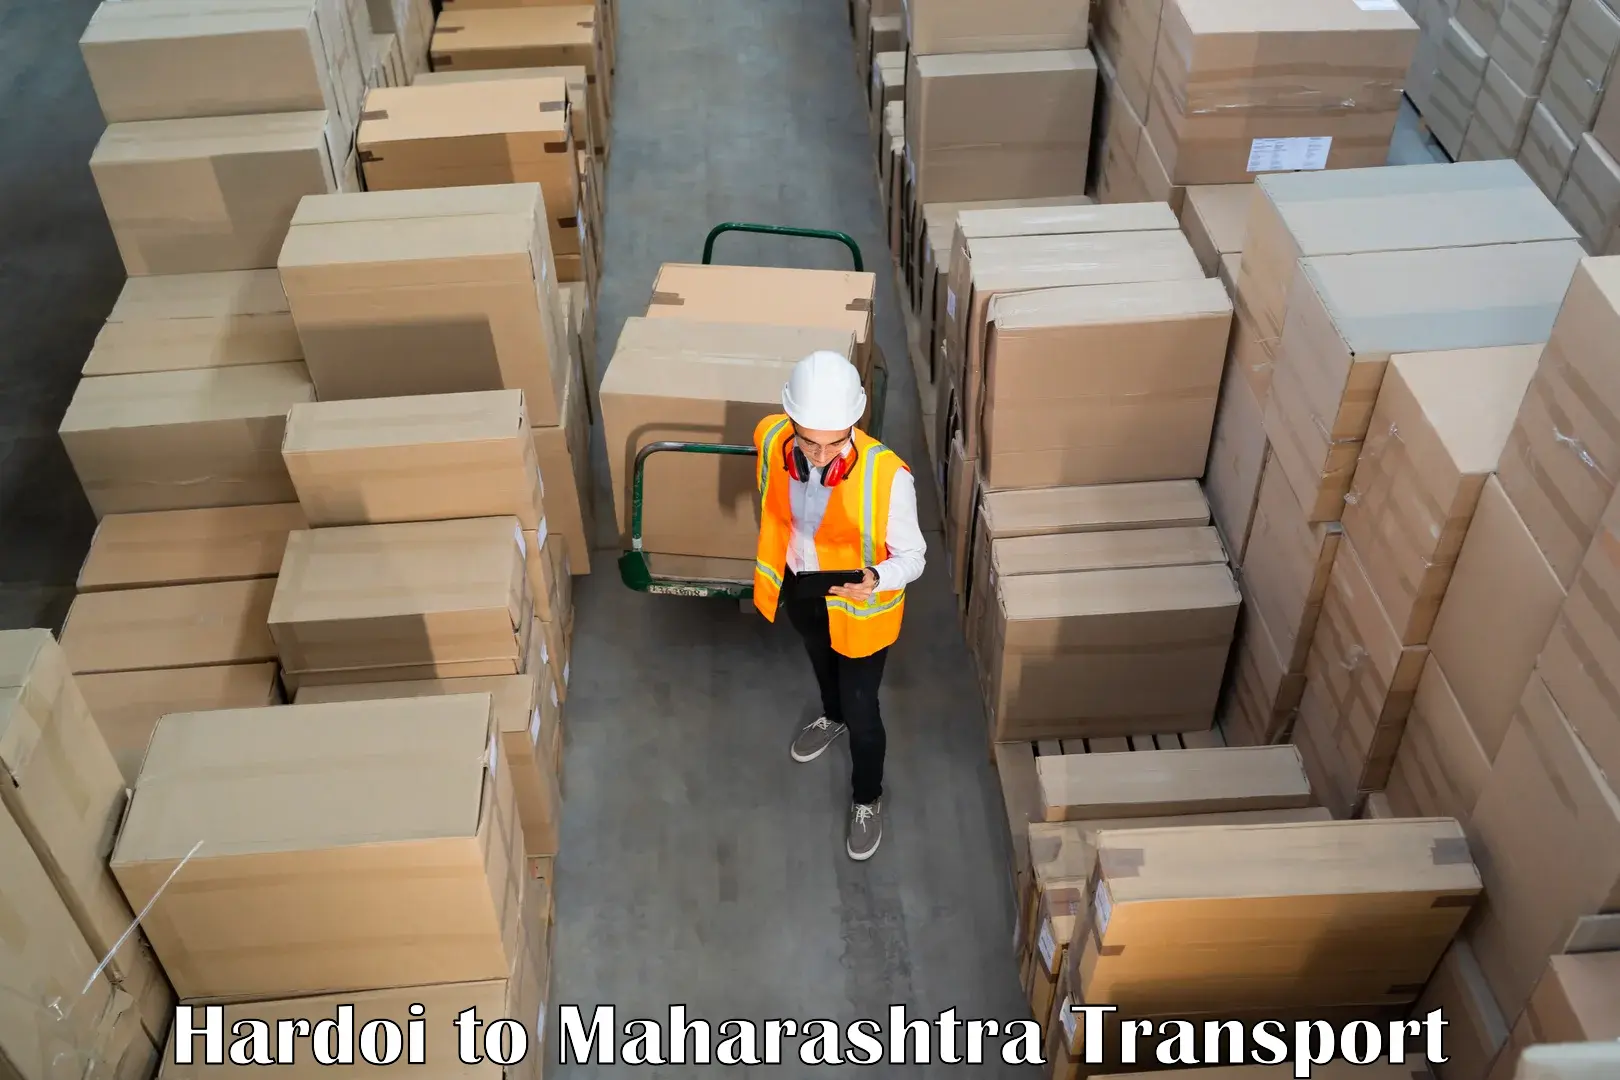 Pick up transport service Hardoi to Maharashtra